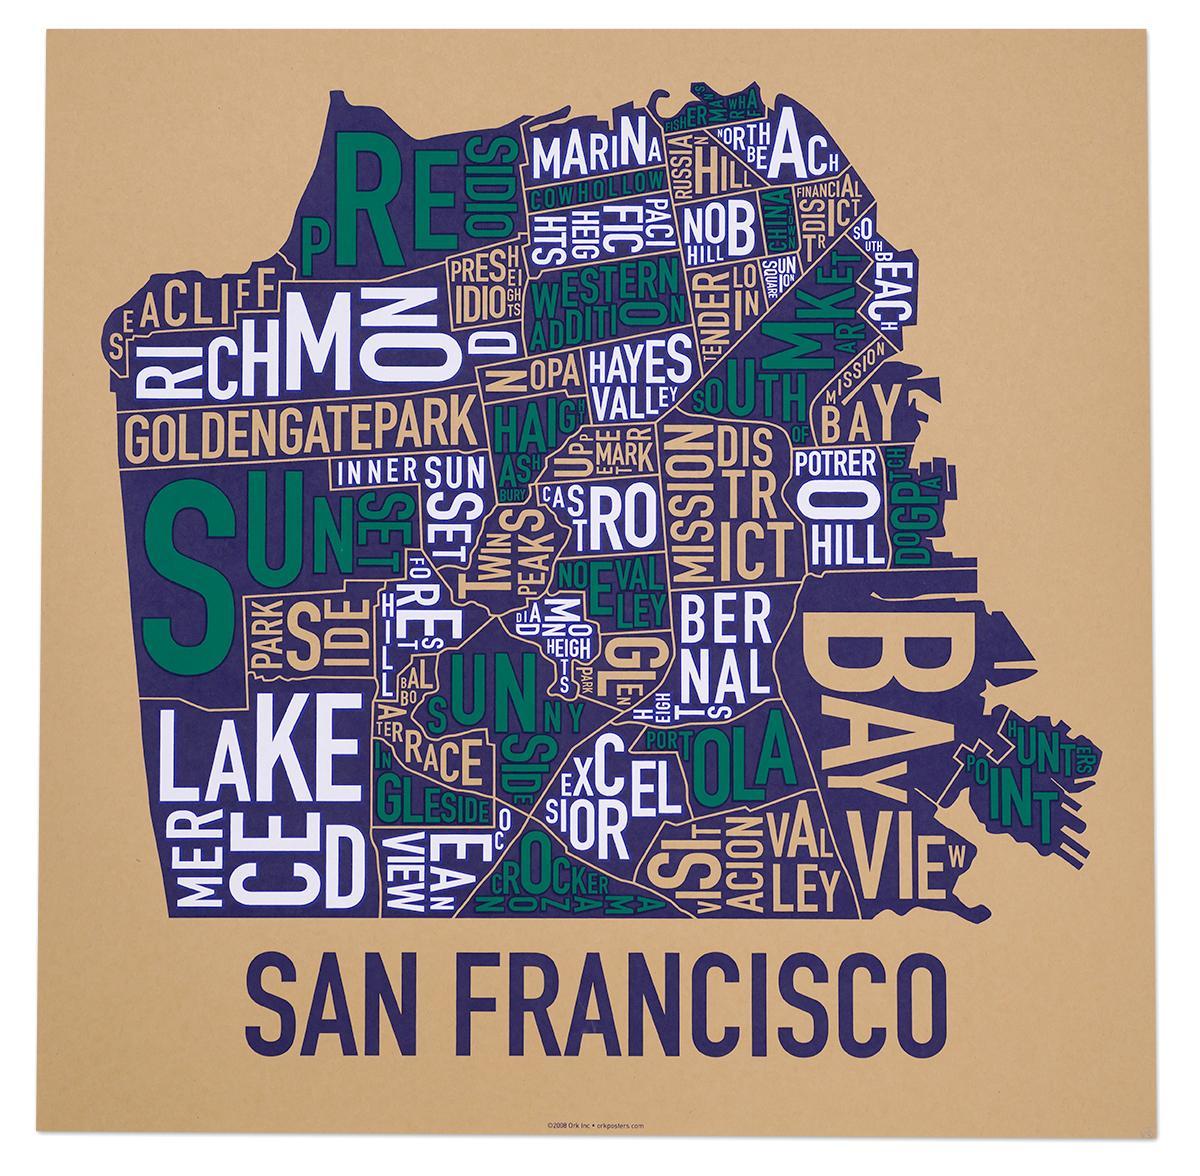 San Francisco სამეზობლოში რუკა, ვებ